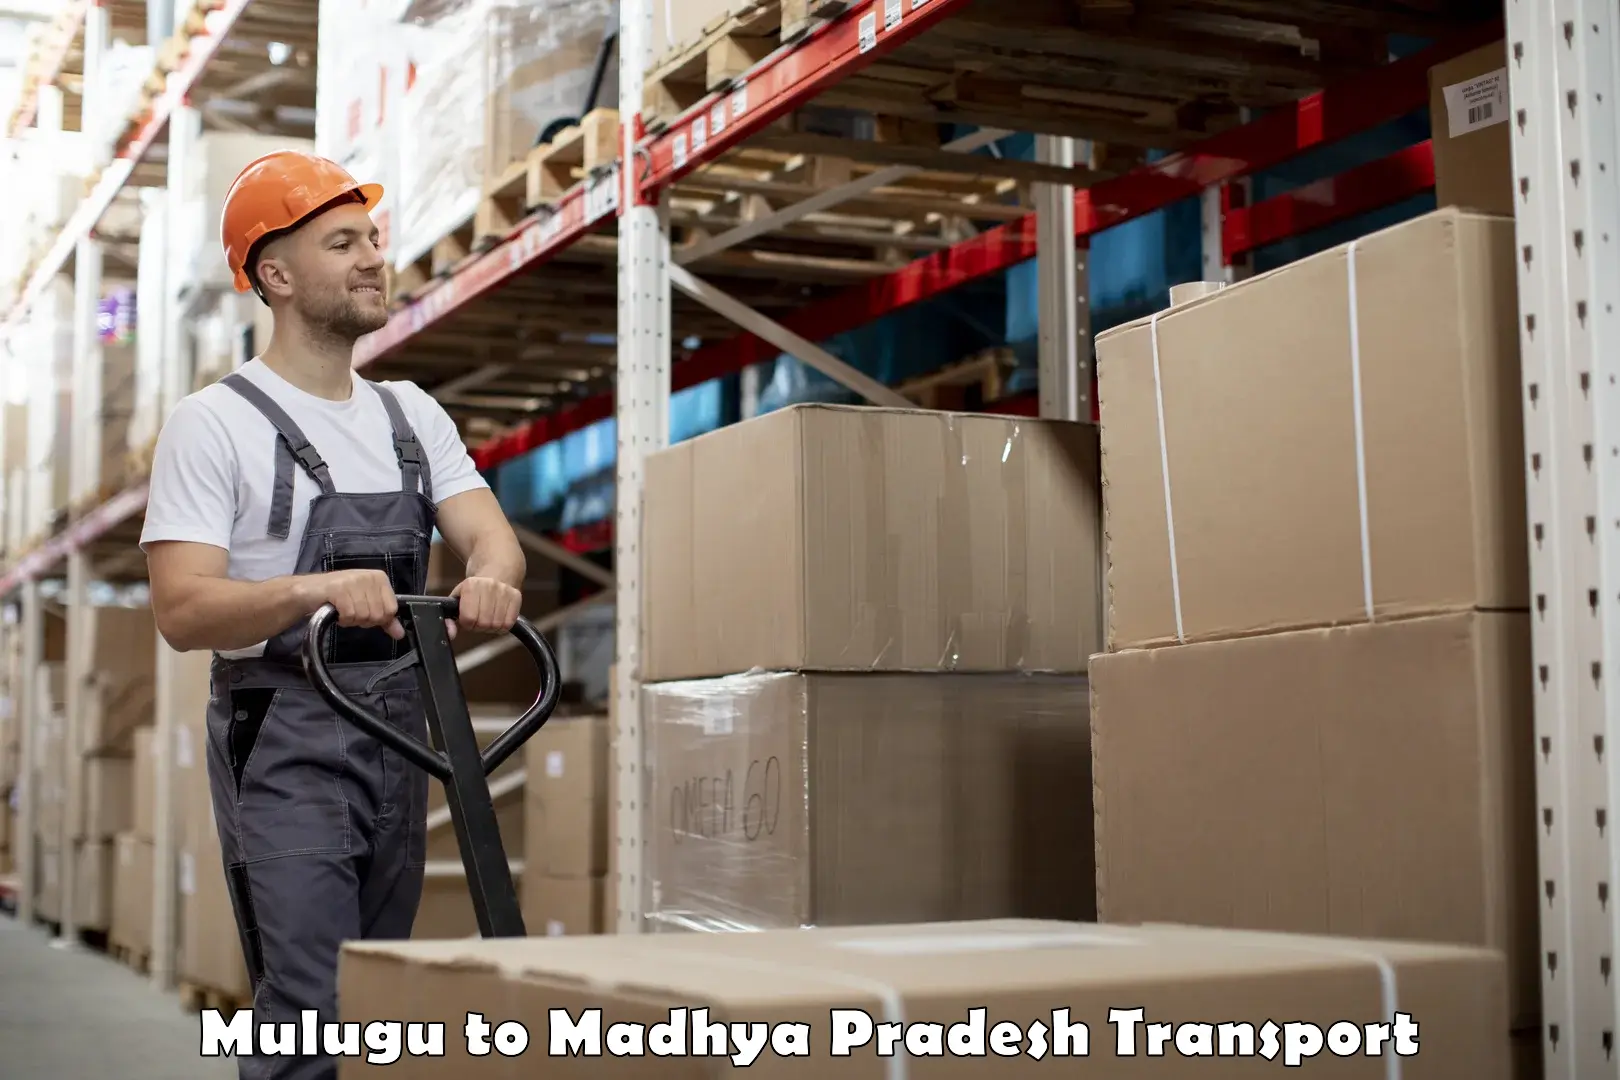 Daily parcel service transport Mulugu to Begumganj